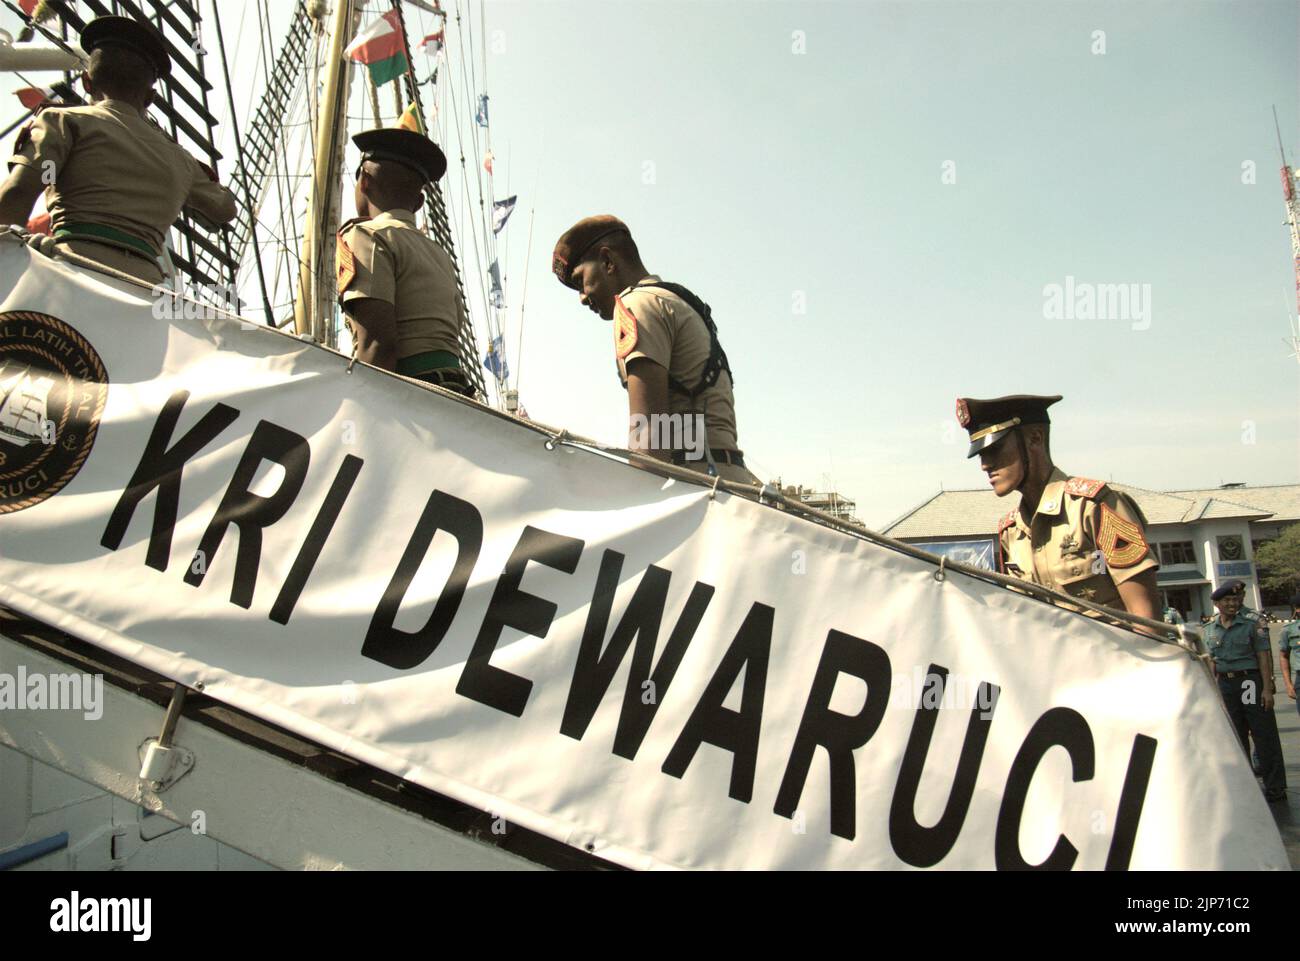 Des cadets de la marine indonésienne qui marchent sur l'échelle pour rejoindre KRI Dewaruci (Dewa Ruci), un grand navire indonésien, tandis que la goélette de type barquentine est ouverte aux visiteurs du port de Kolinlamil (port de la marine) à Tanjung Priok, dans le nord de Jakarta, Jakarta, en Indonésie. Banque D'Images